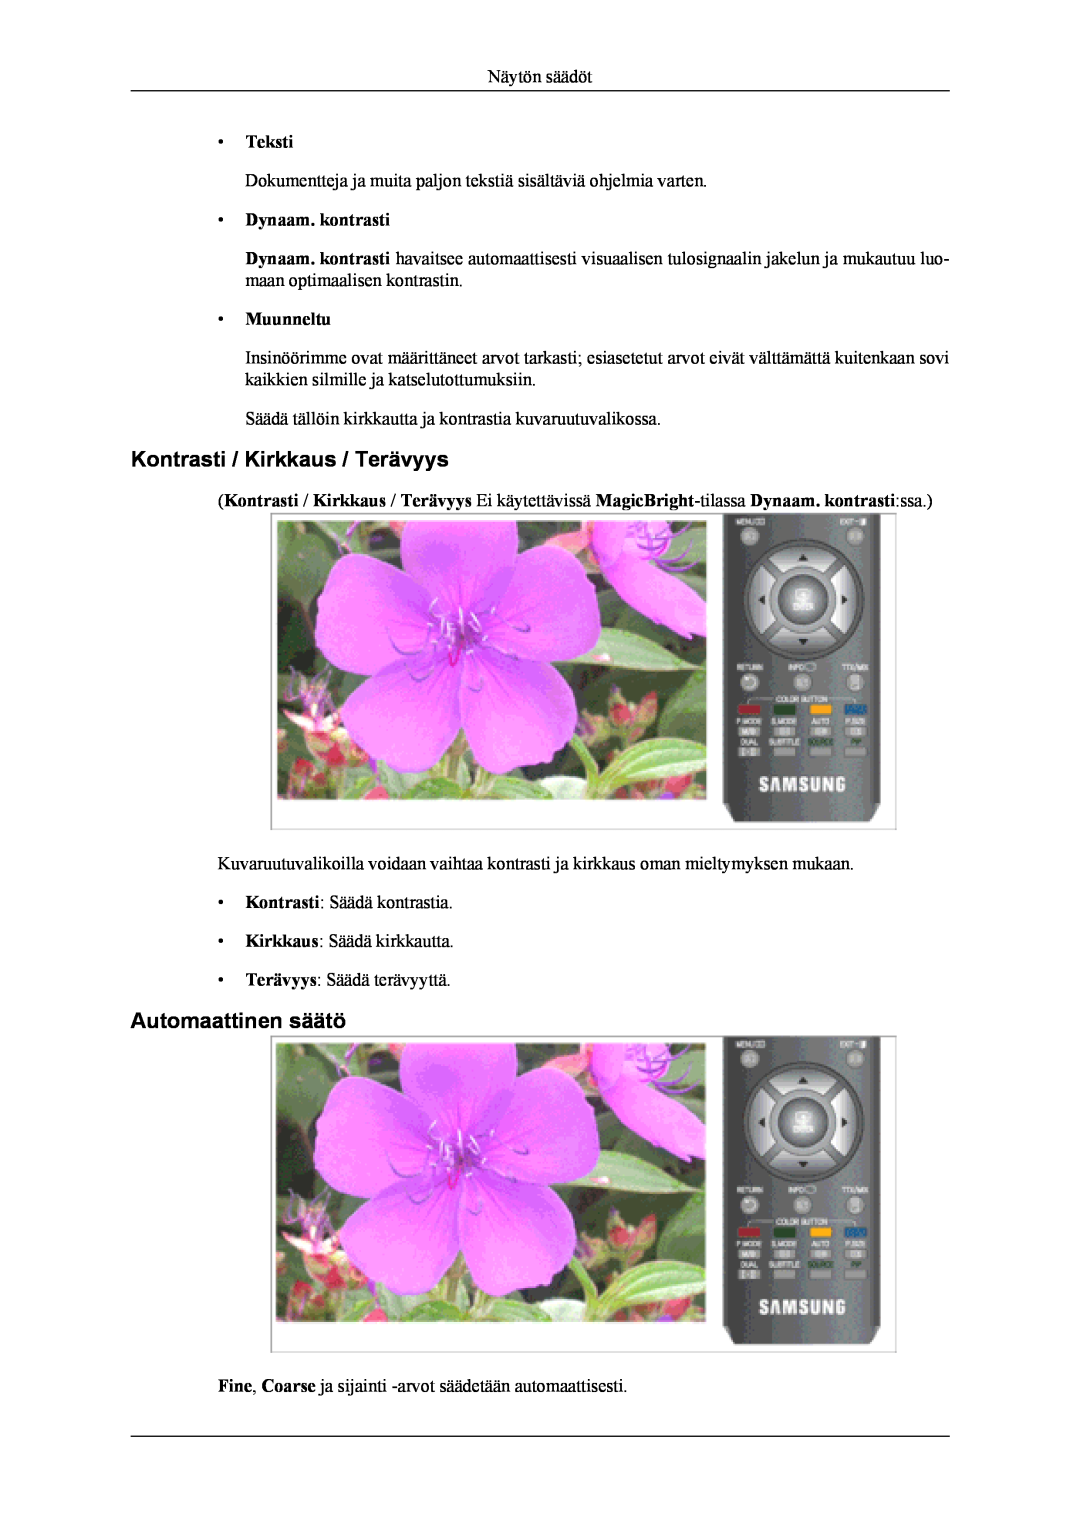 Samsung LS20TDDSUV/EN manual Kontrasti / Kirkkaus / Terävyys, Automaattinen säätö, Teksti, Dynaam. kontrasti, Muunneltu 